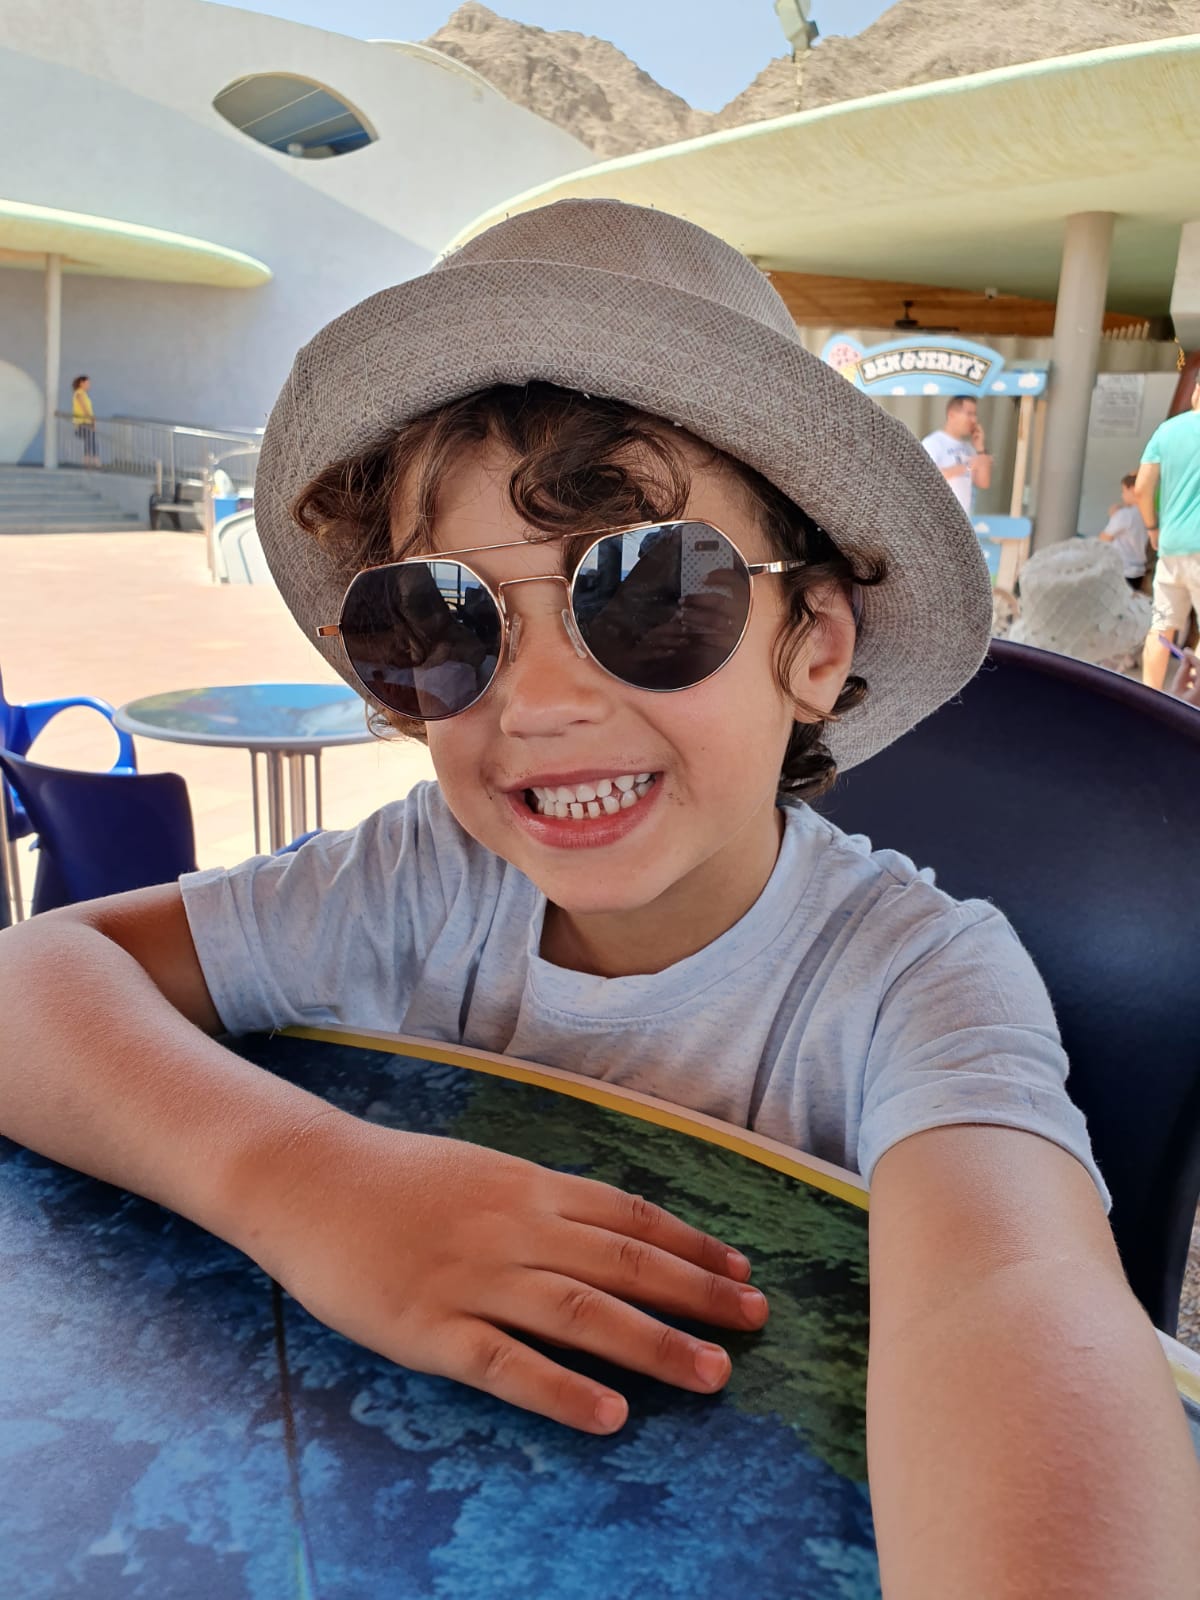 צילום ילד עם משקפי שמש וכובע - צלמת רוני ישראל